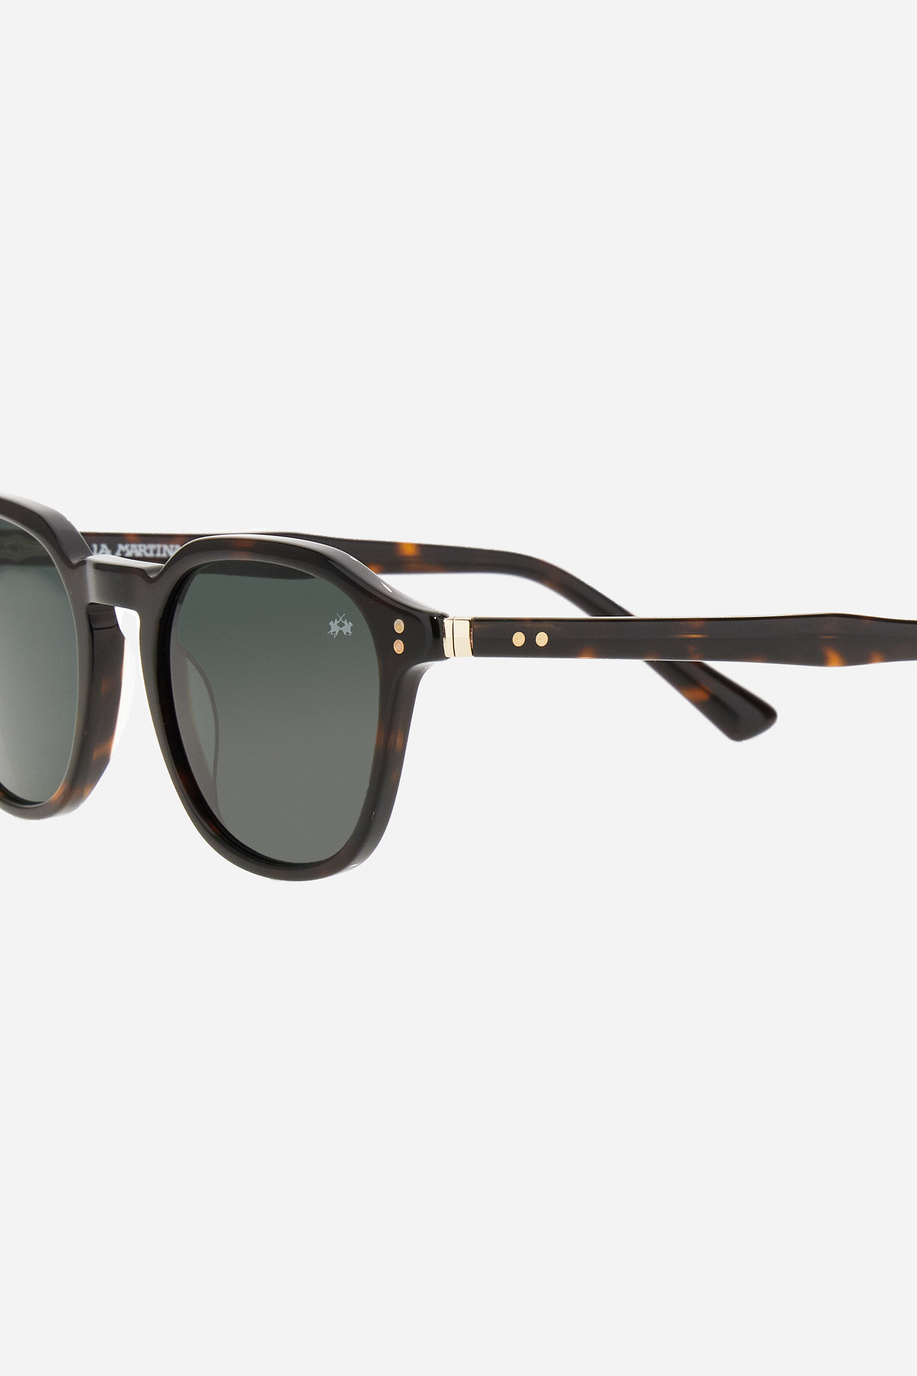 Drop model men's sunglasses - Our favourites for her | La Martina - Official Online Shop